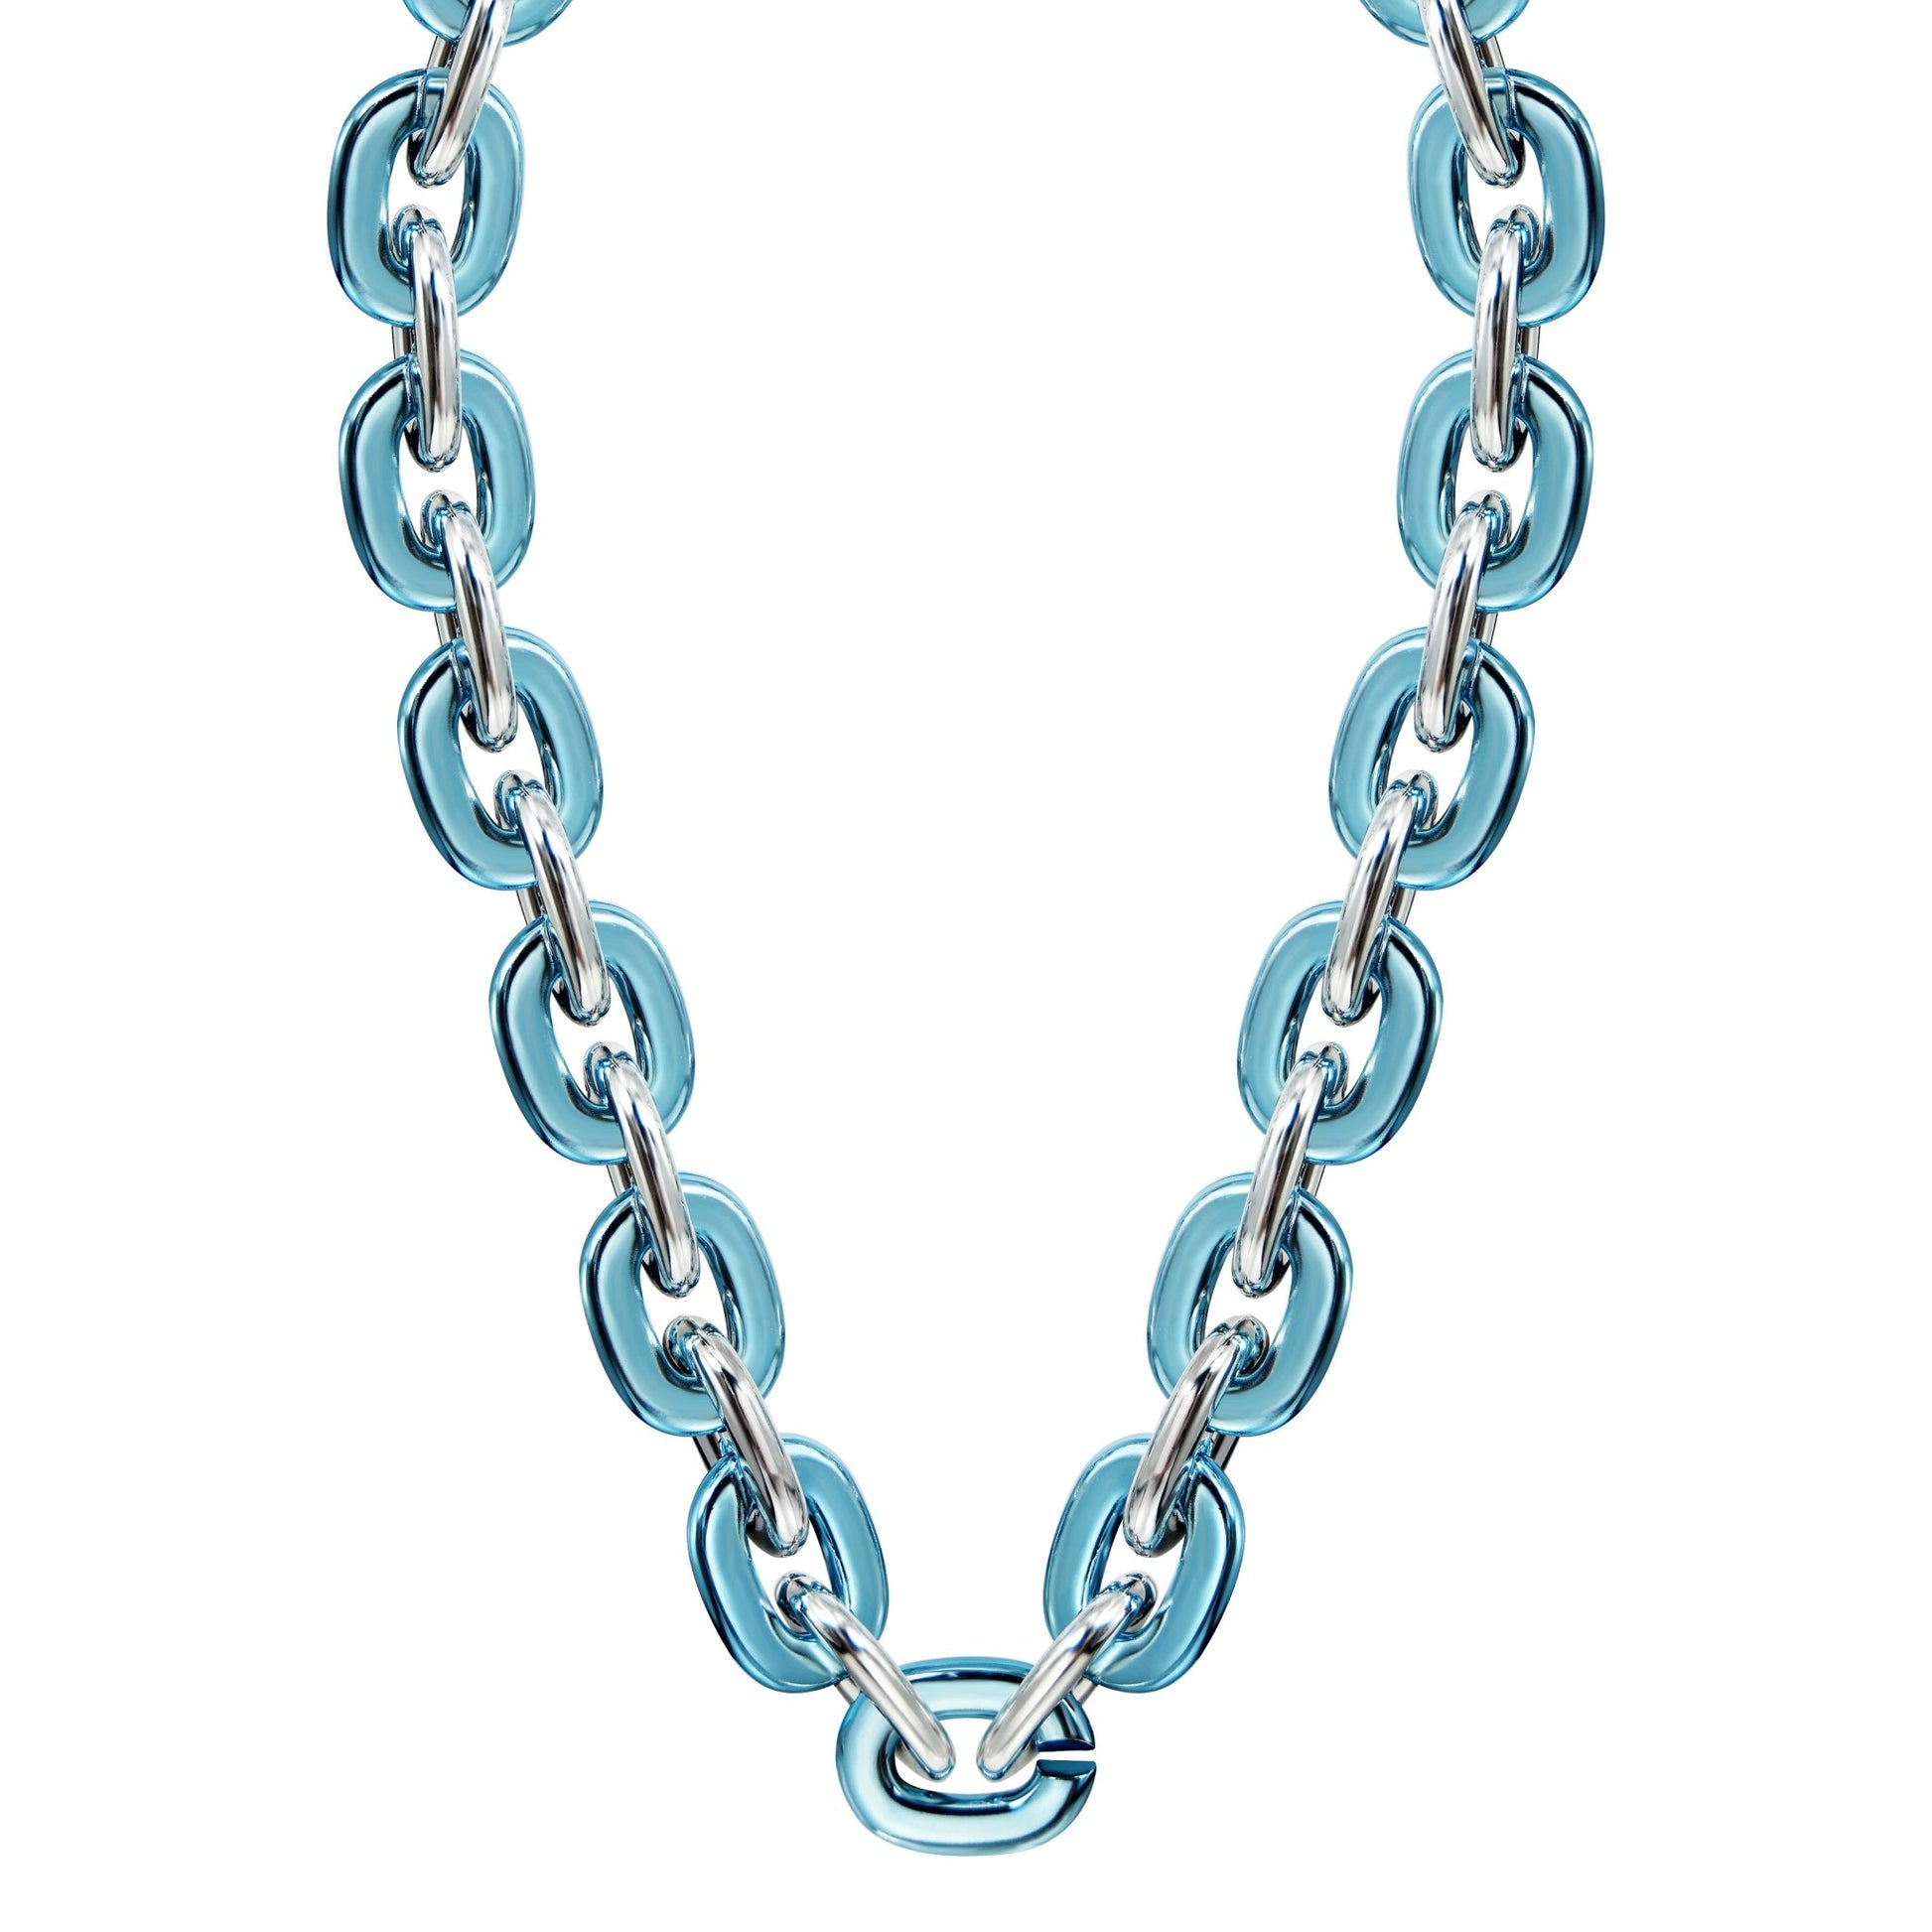 Jumbo Fan Chain Necklace - Gamedays Gear - Light Blue / Silver